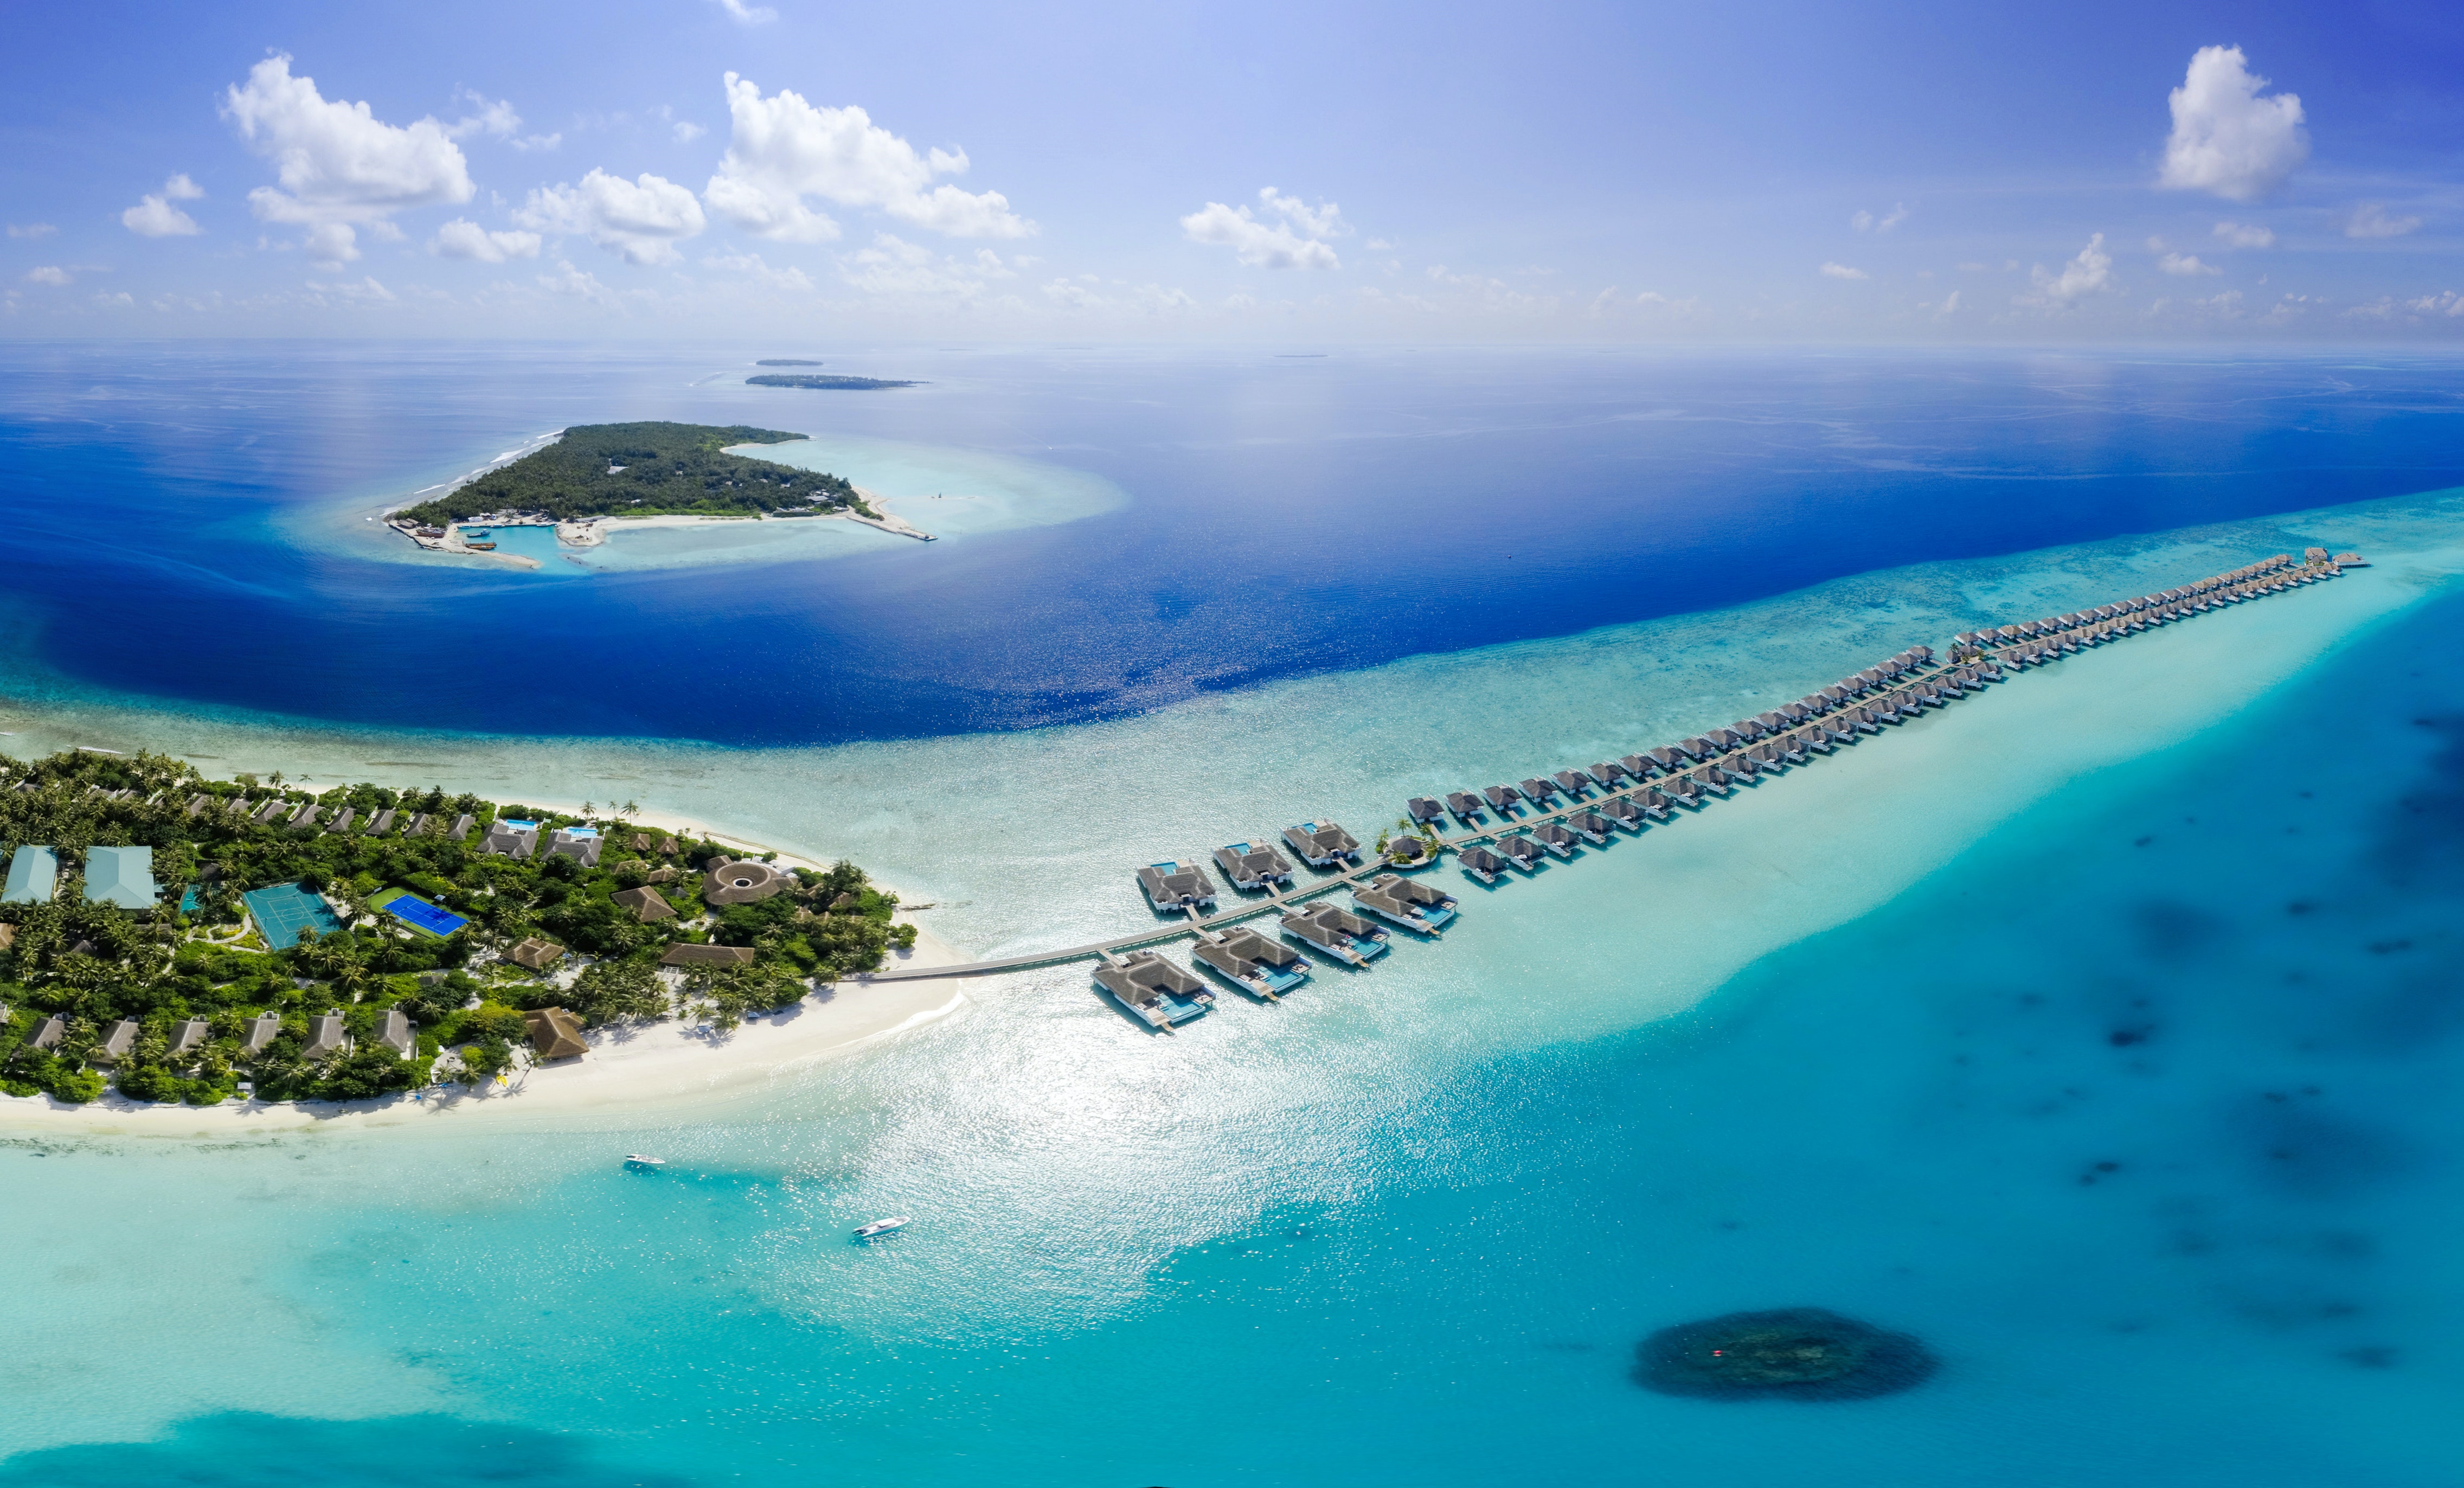 Inhabited island. Мальдивы острова. Индийский океан Мальдивы. Мальдивы фото. Самые красивые острова в мире.